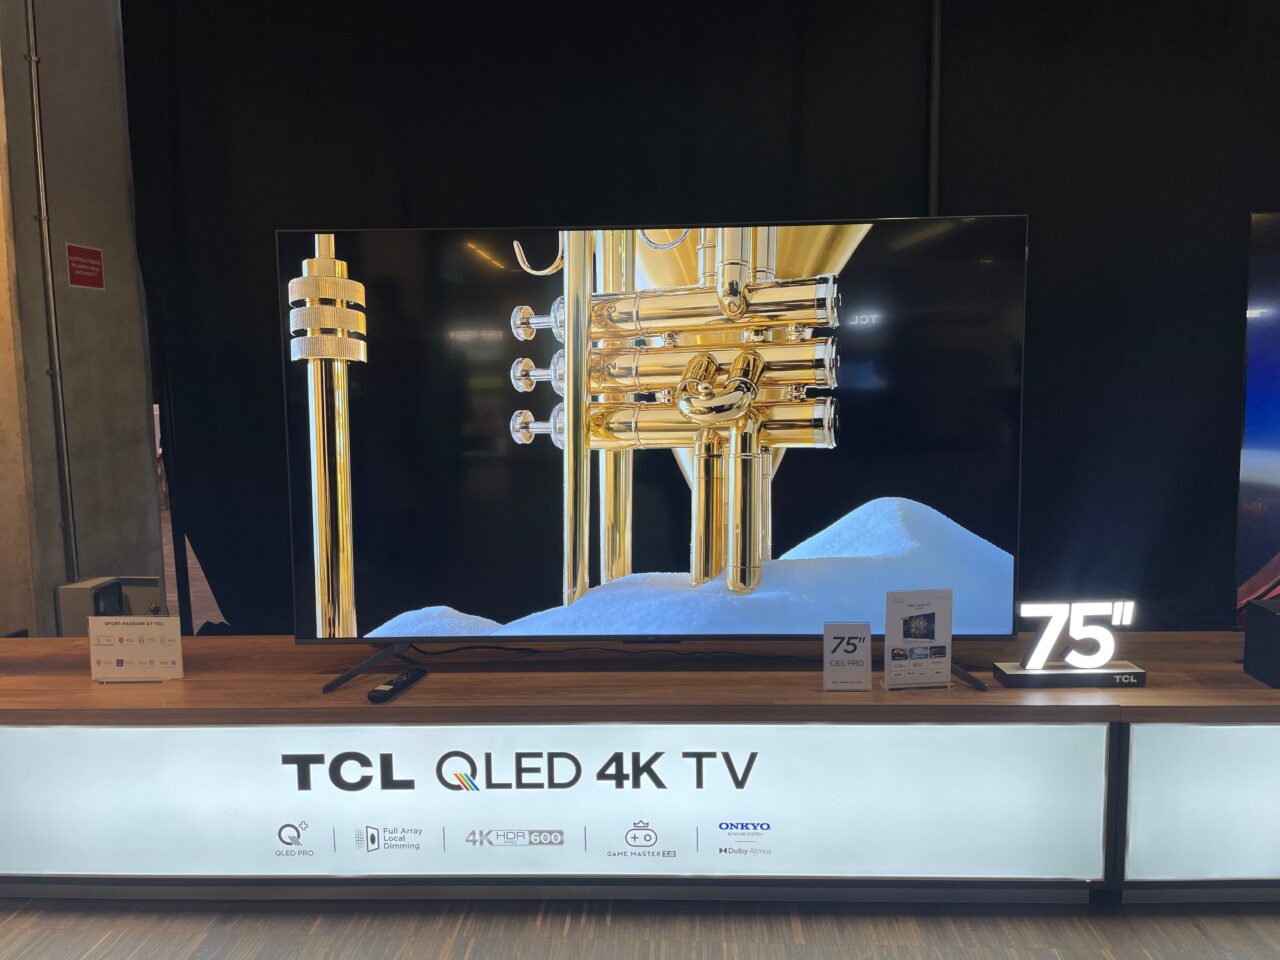 Duży telewizor TCL QLED 4K 75 cali prezentujący obraz złotej trąbki na tle śnieżnych gór.